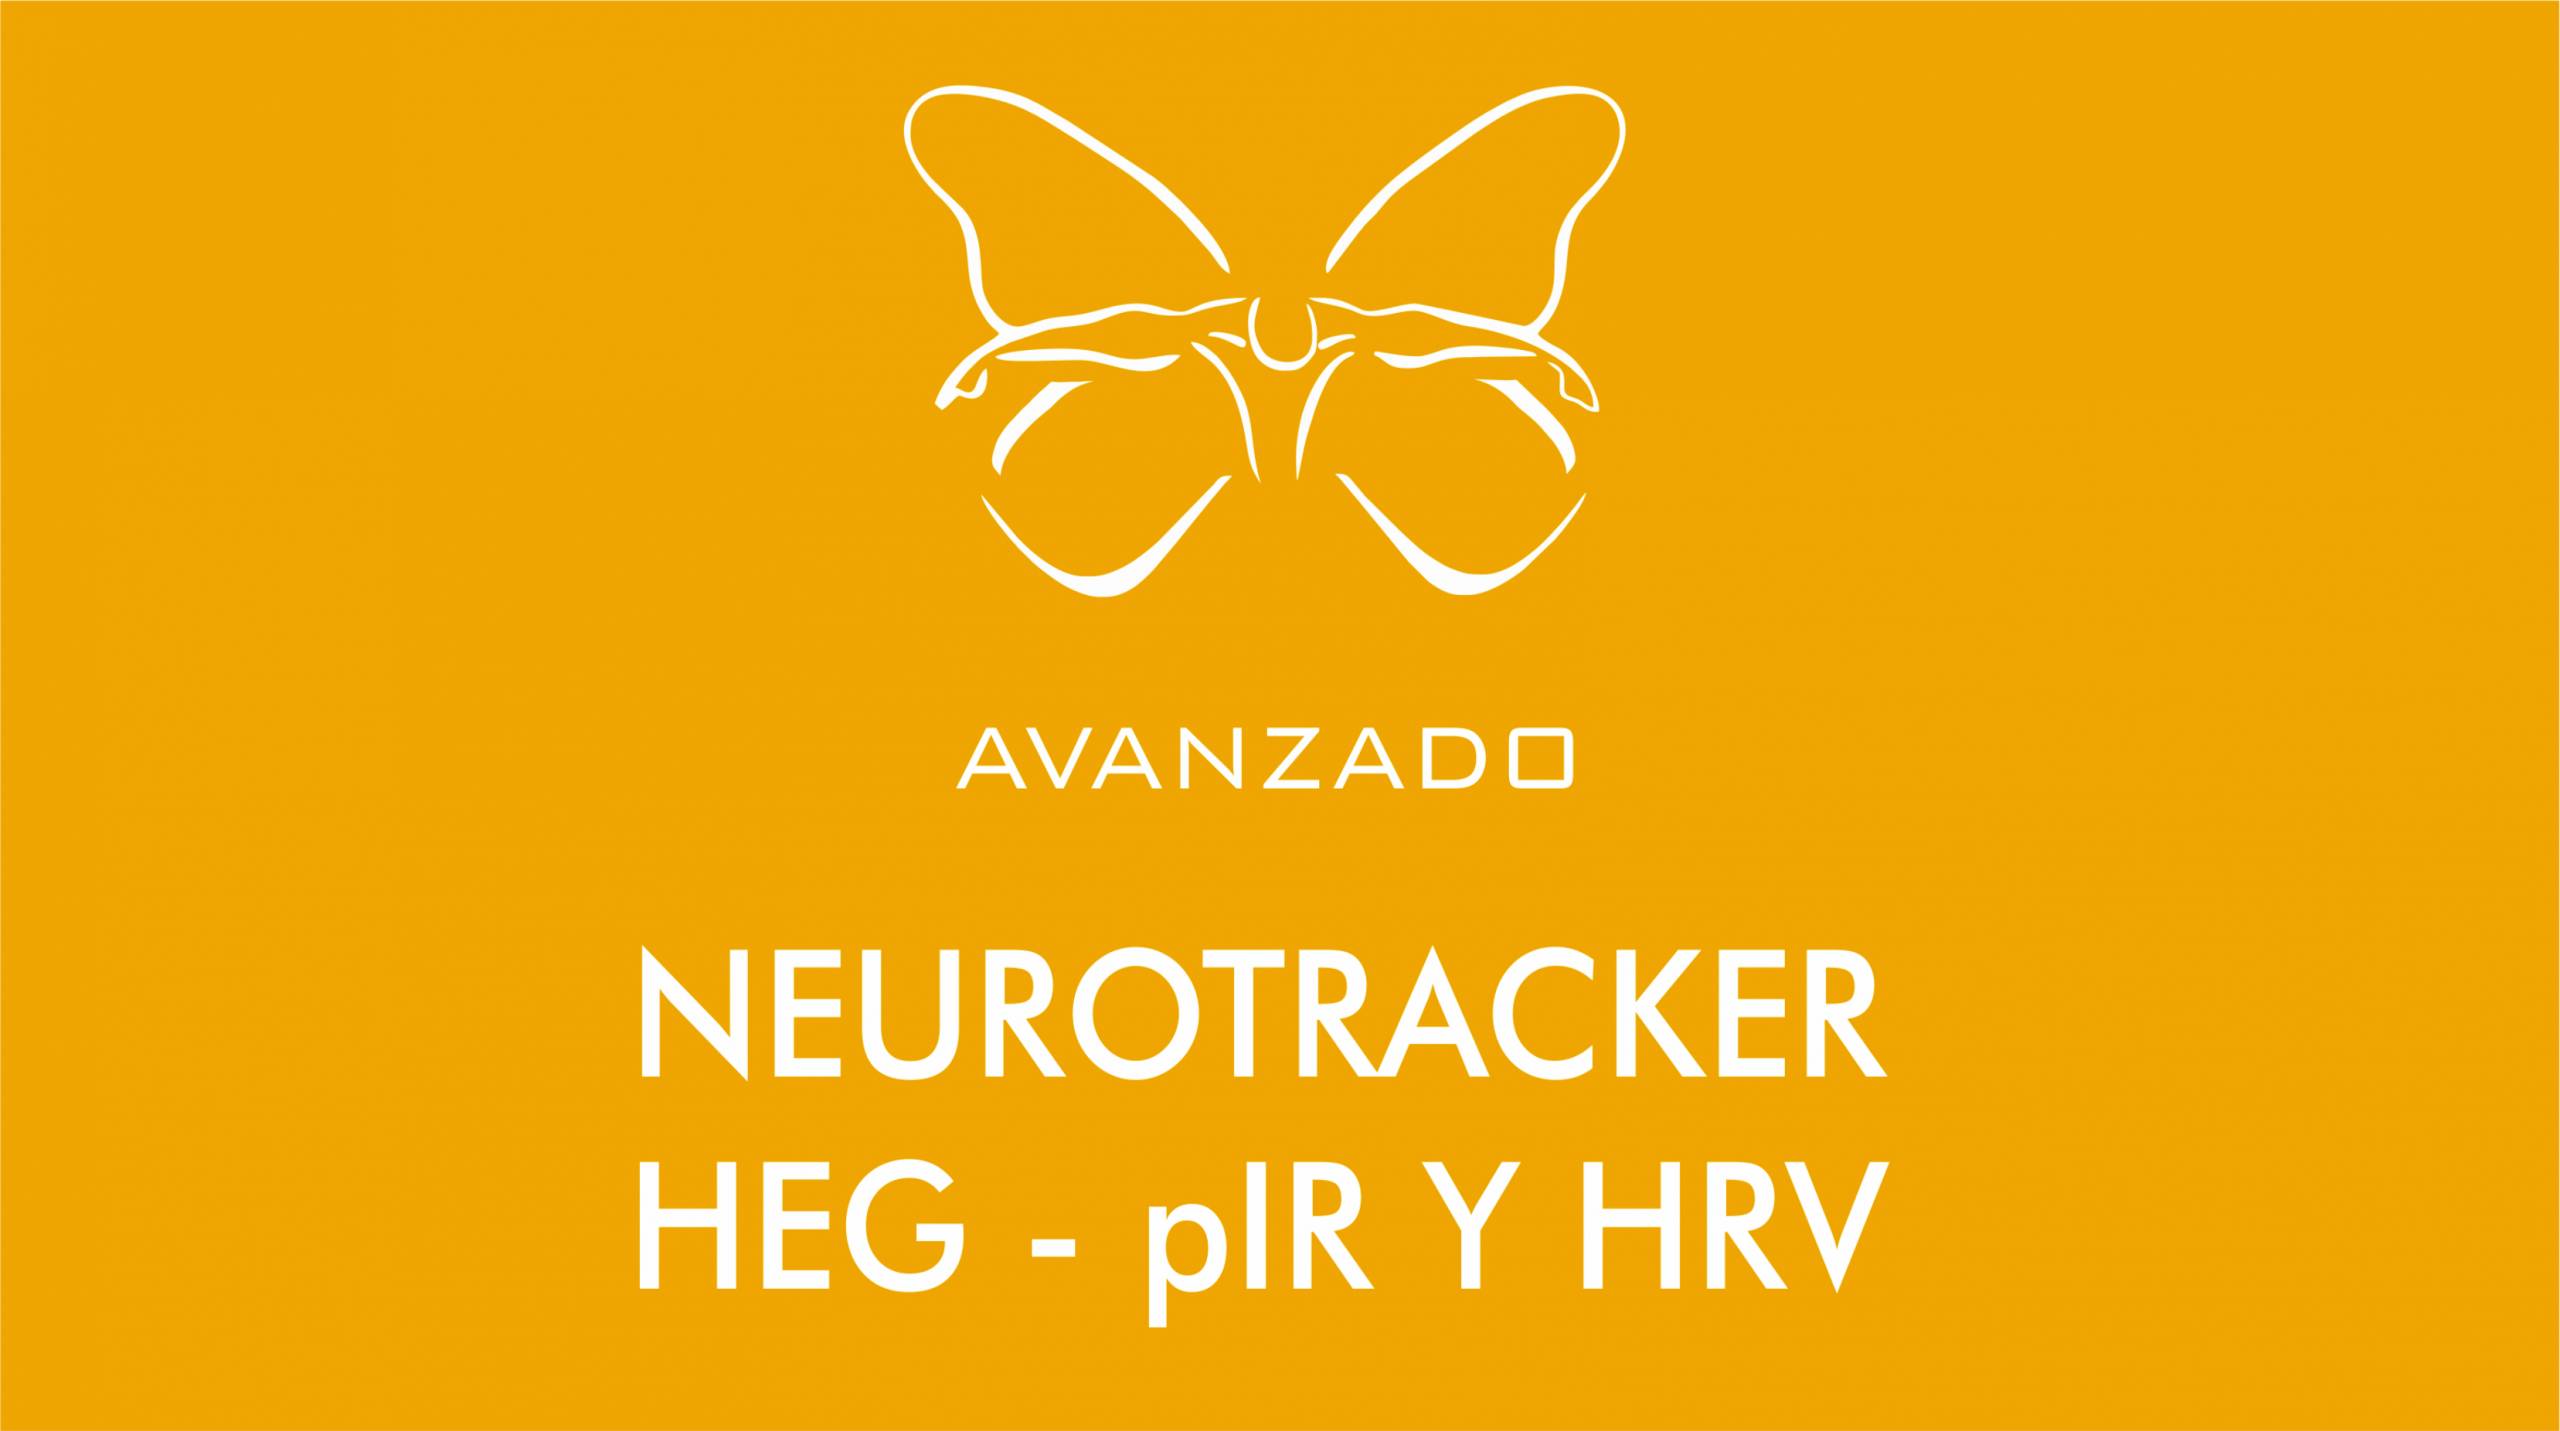 Curso/Taller Neurotracker, HEG – pIR y HRV